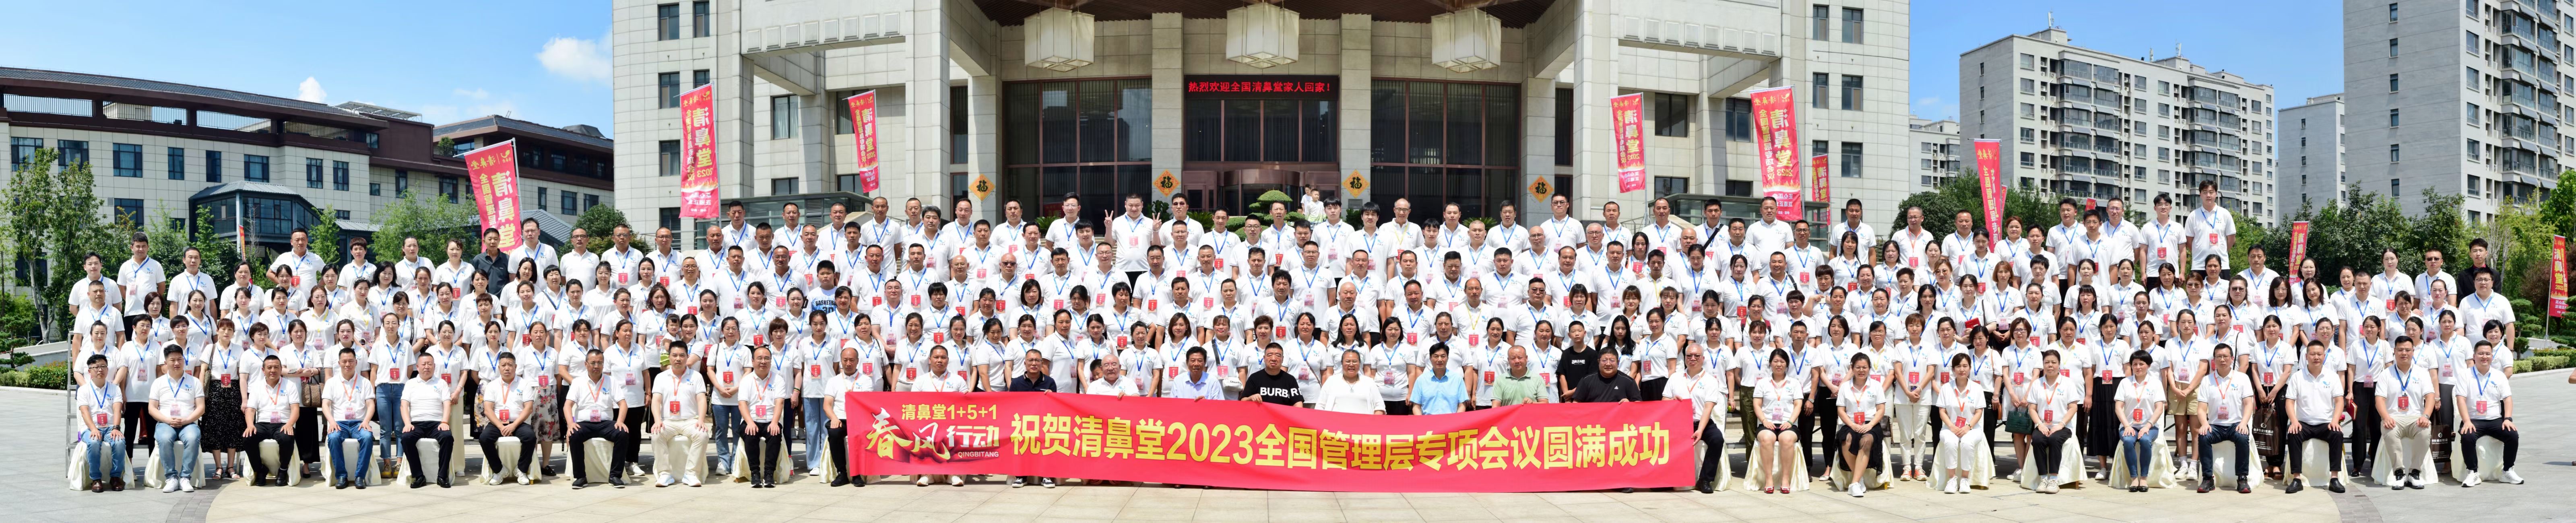 热烈祝贺清鼻堂2023管理层专项会议圆满成功